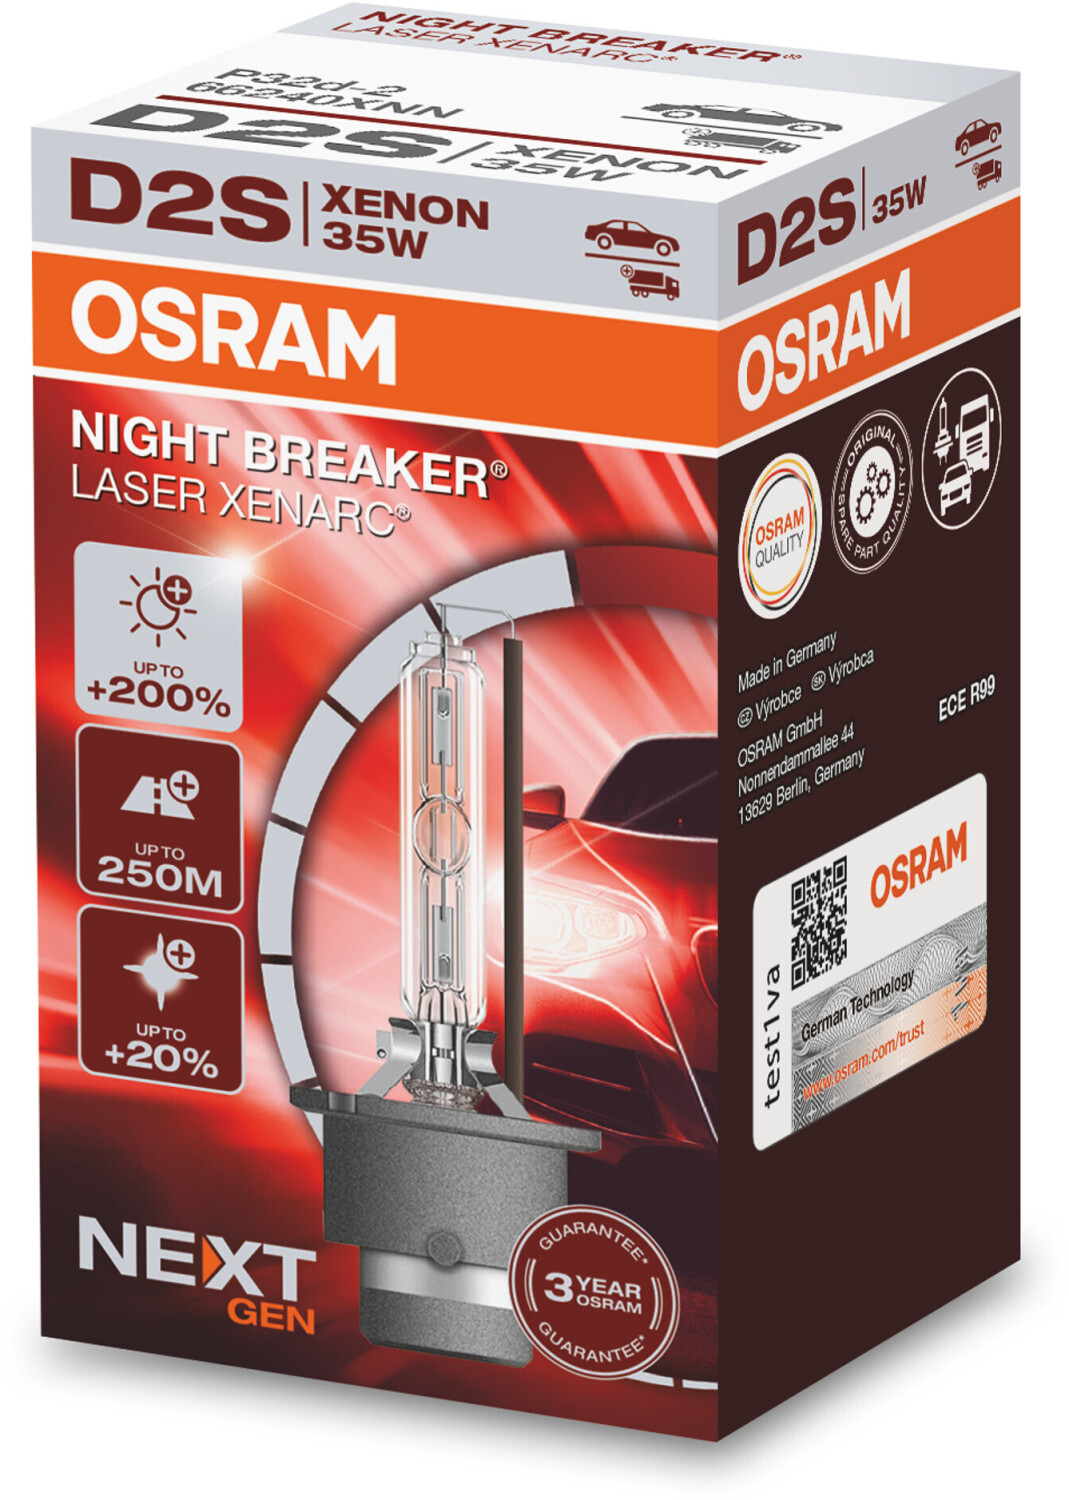 Auto-Lampen-Discount - H7 Lampen und mehr günstig kaufen - OSRAM Xenarc D2S  Xenon Brenner Neu E1 85V 35W 66240